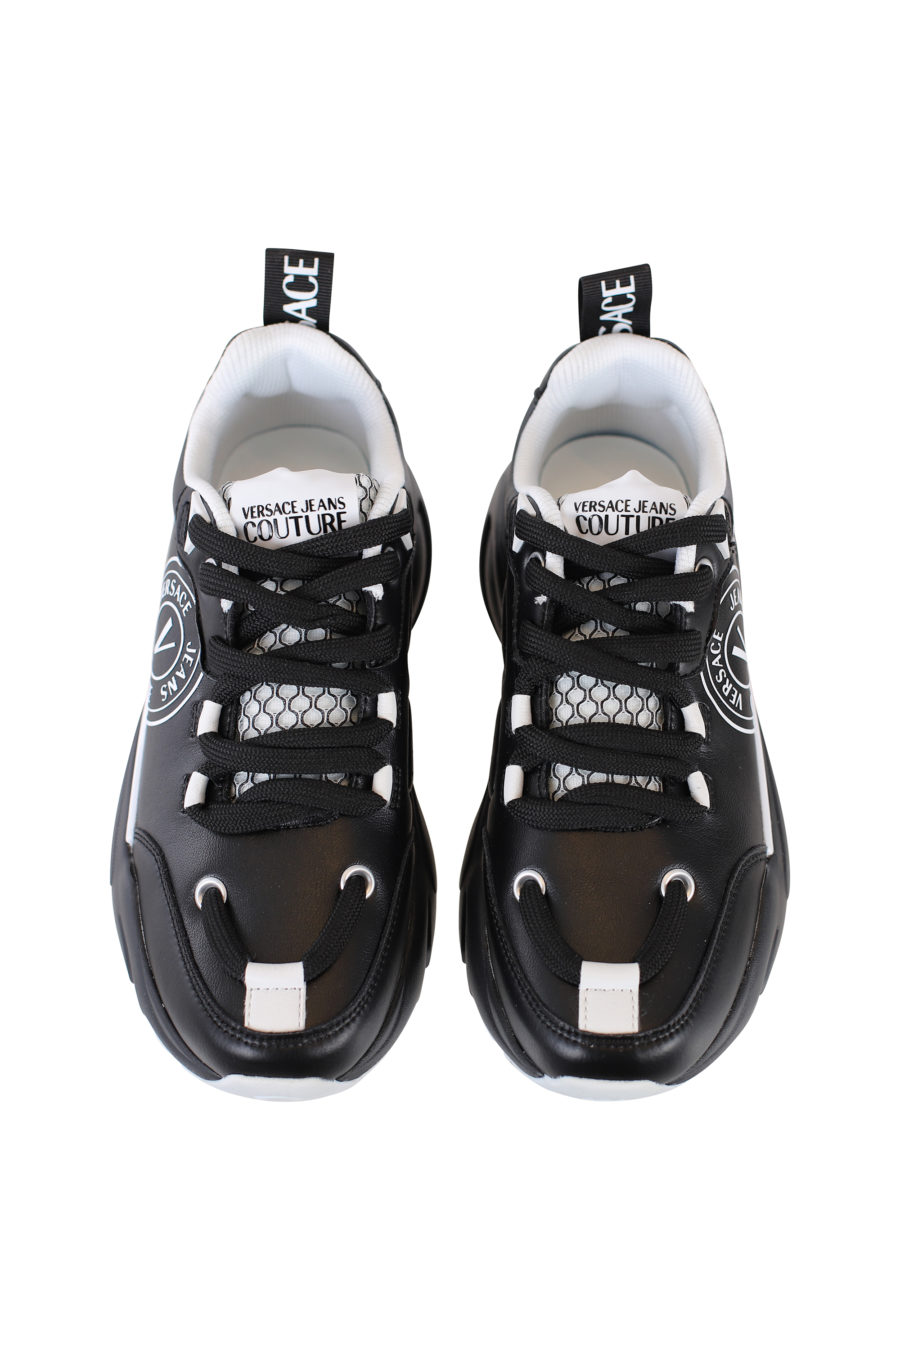 Zapatillas negras con detalles blancos "Wave" - IMG 2165